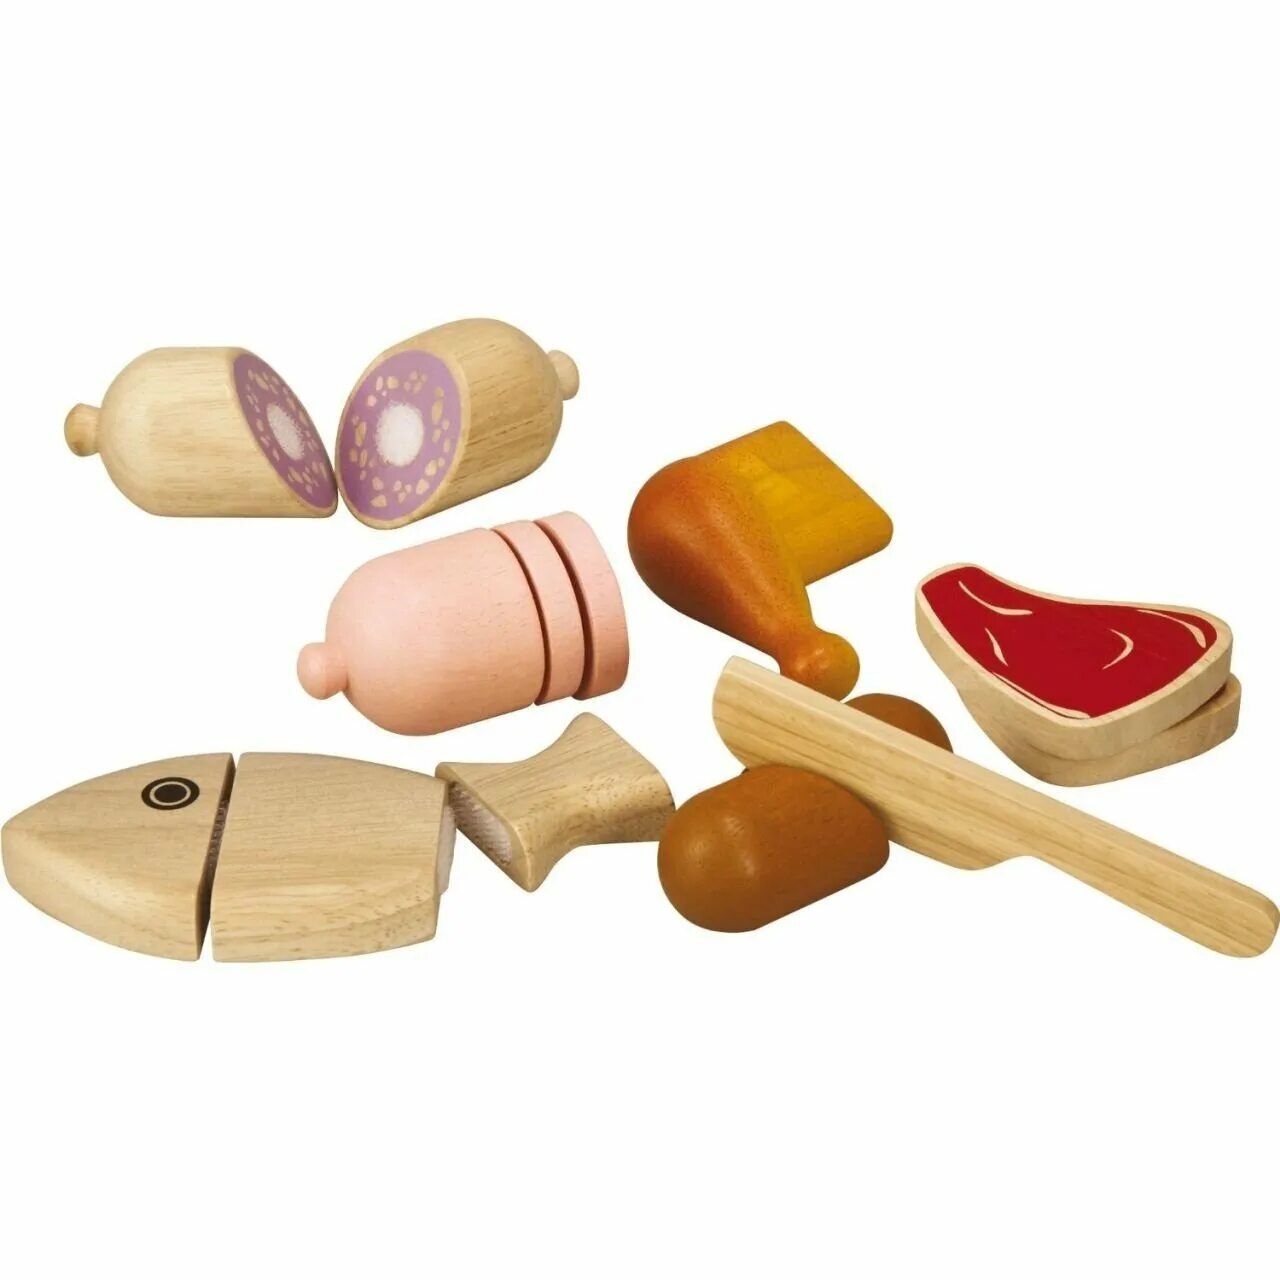 Набор деревянных игрушек. Игрушечная деревянная еда. Деревянная игрушка "девочка". Деревянные игрушки для взрослых.